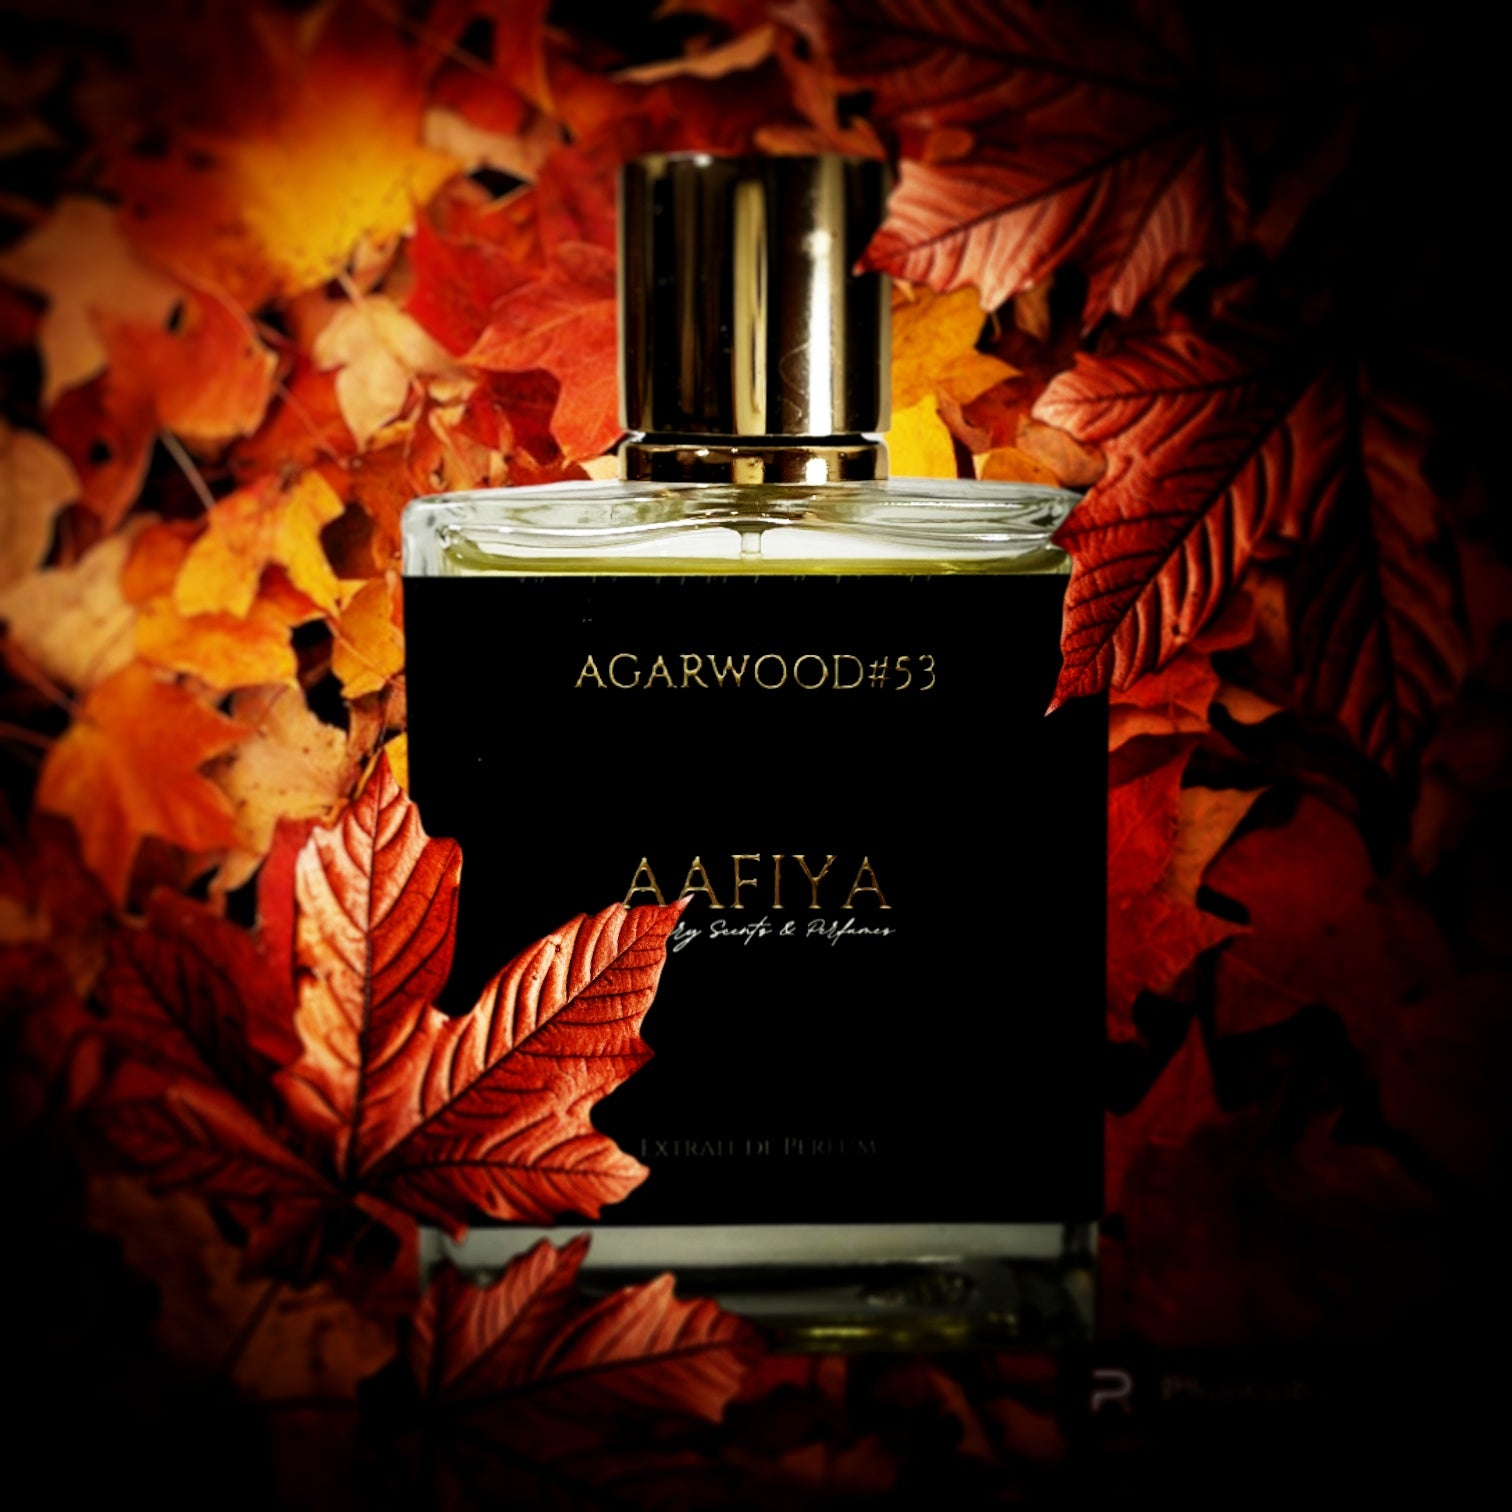 Agarwood#53 - Aafiya Luxury Scents & Perfumes